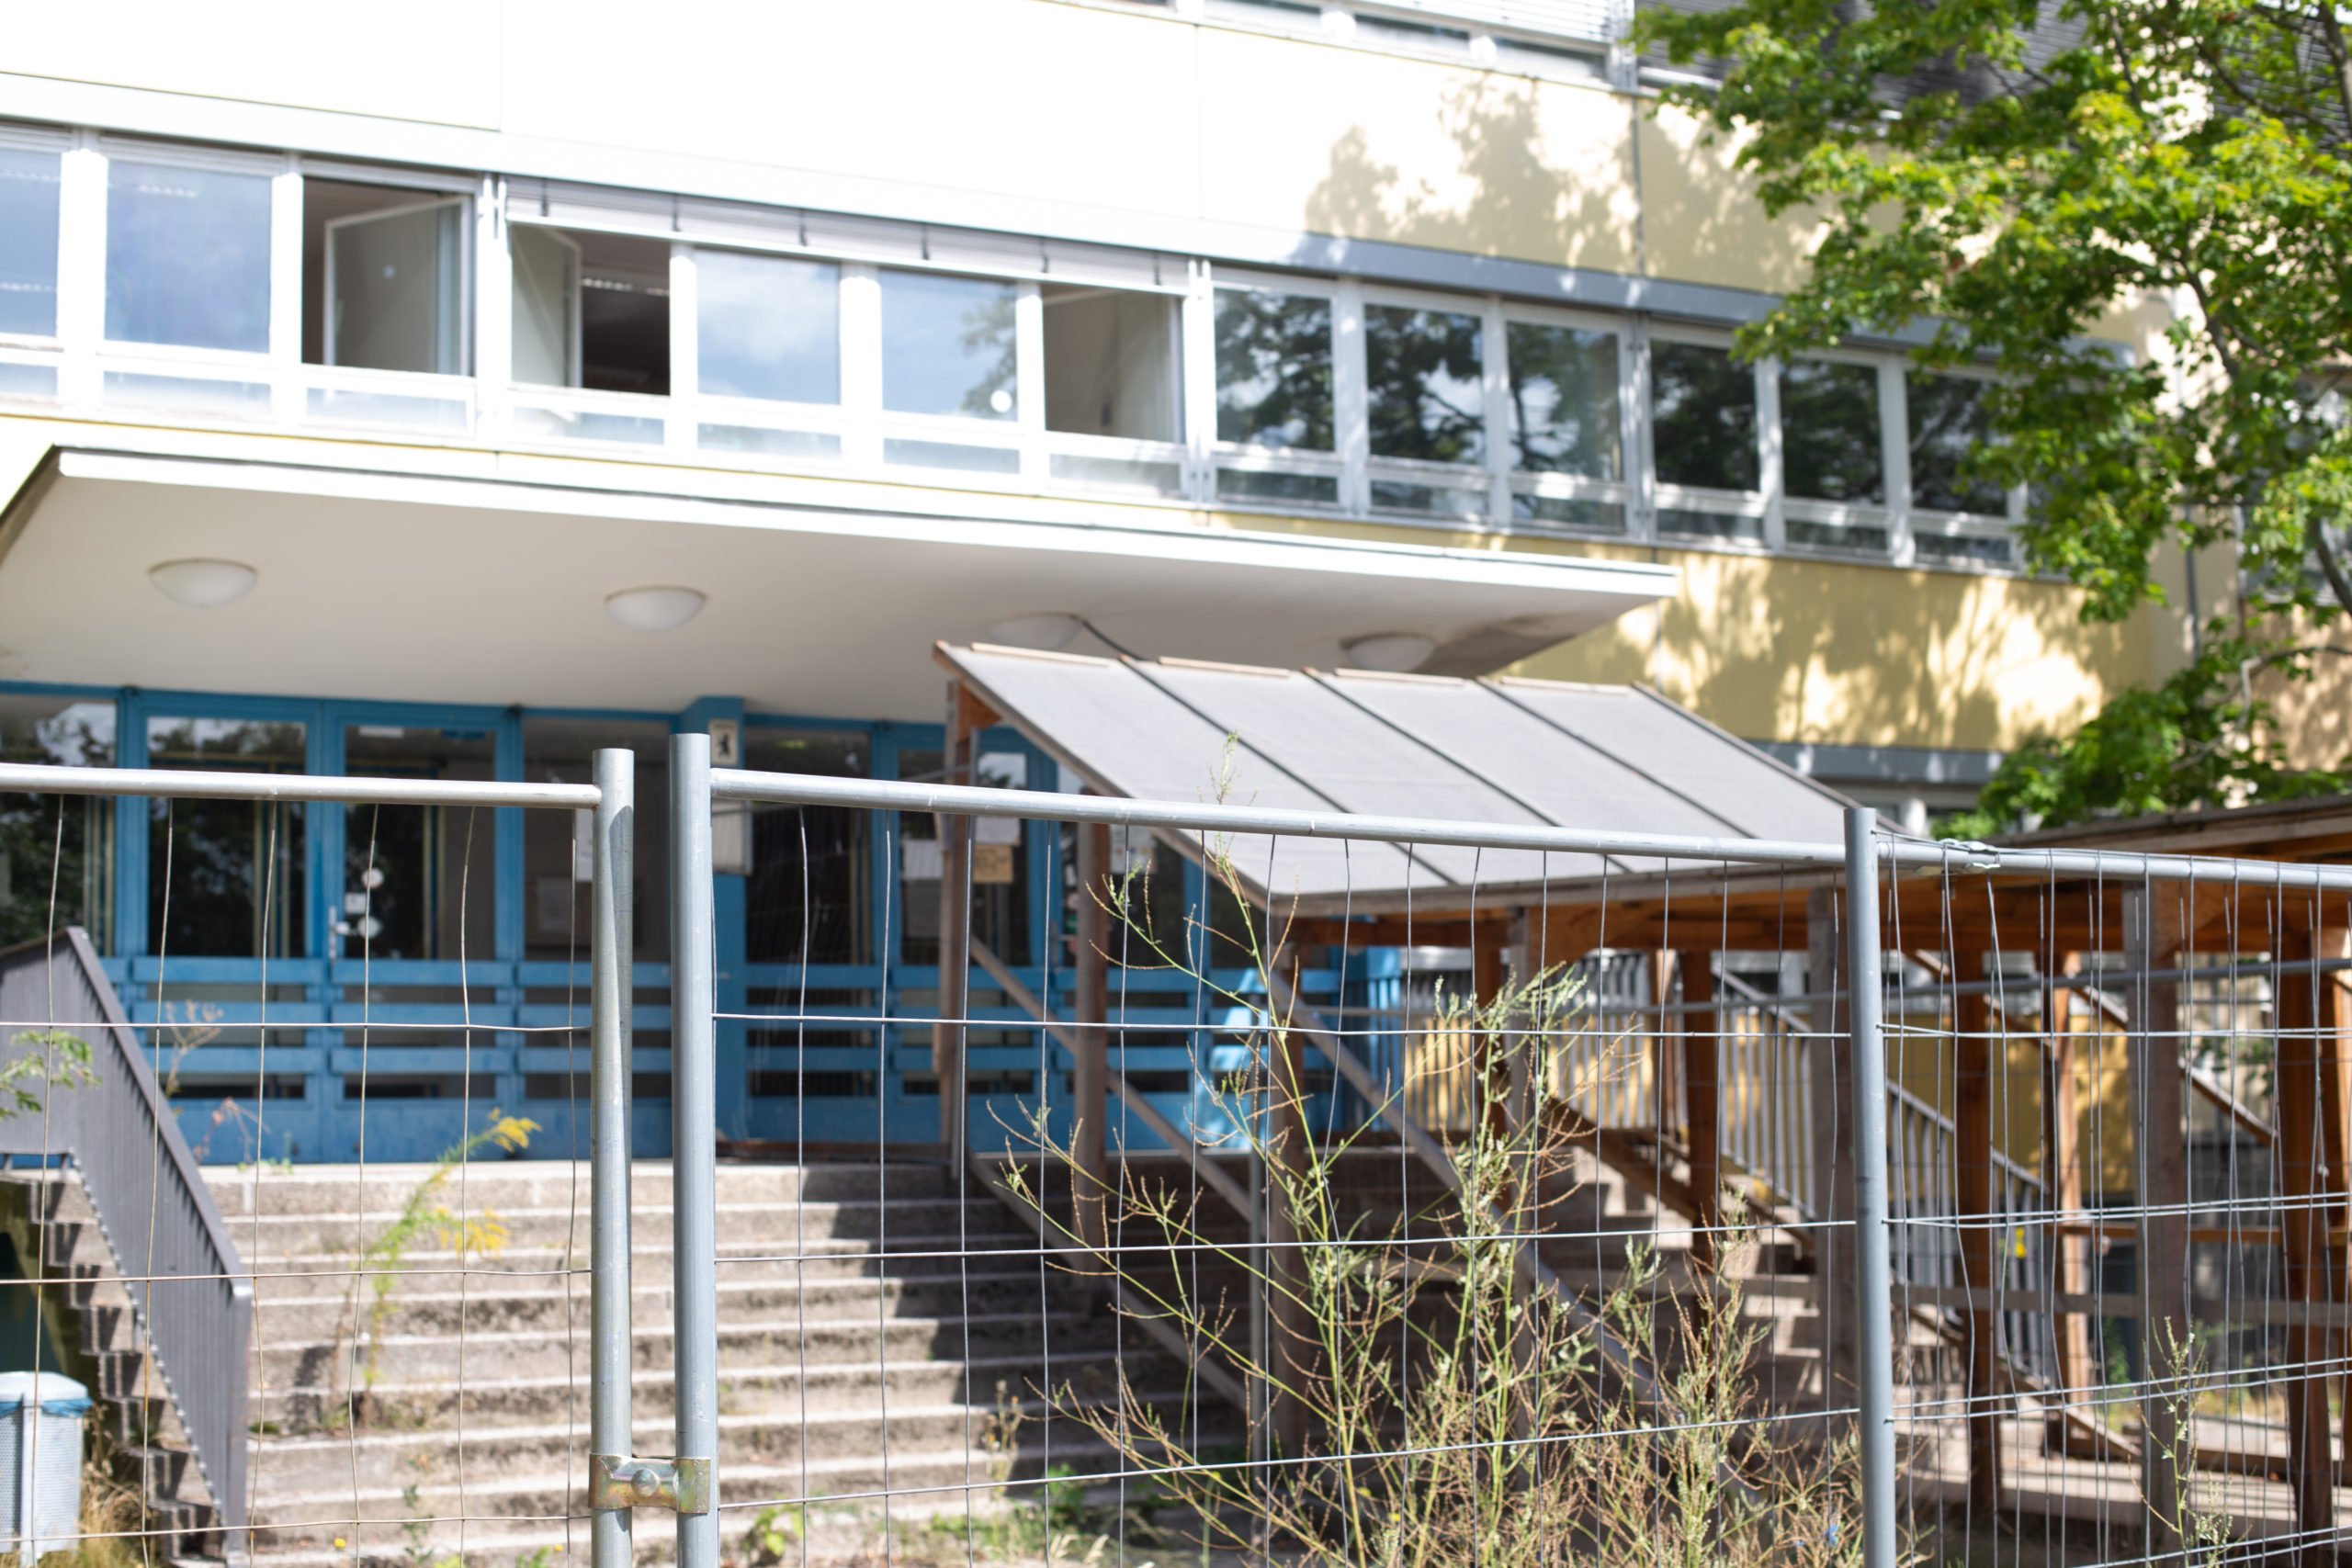 Marode Berliner Schule: Gymnasium am Europasportpark mit Schutzüberdachung und Bauzaun-Absperrung. Foto: Luka Godec